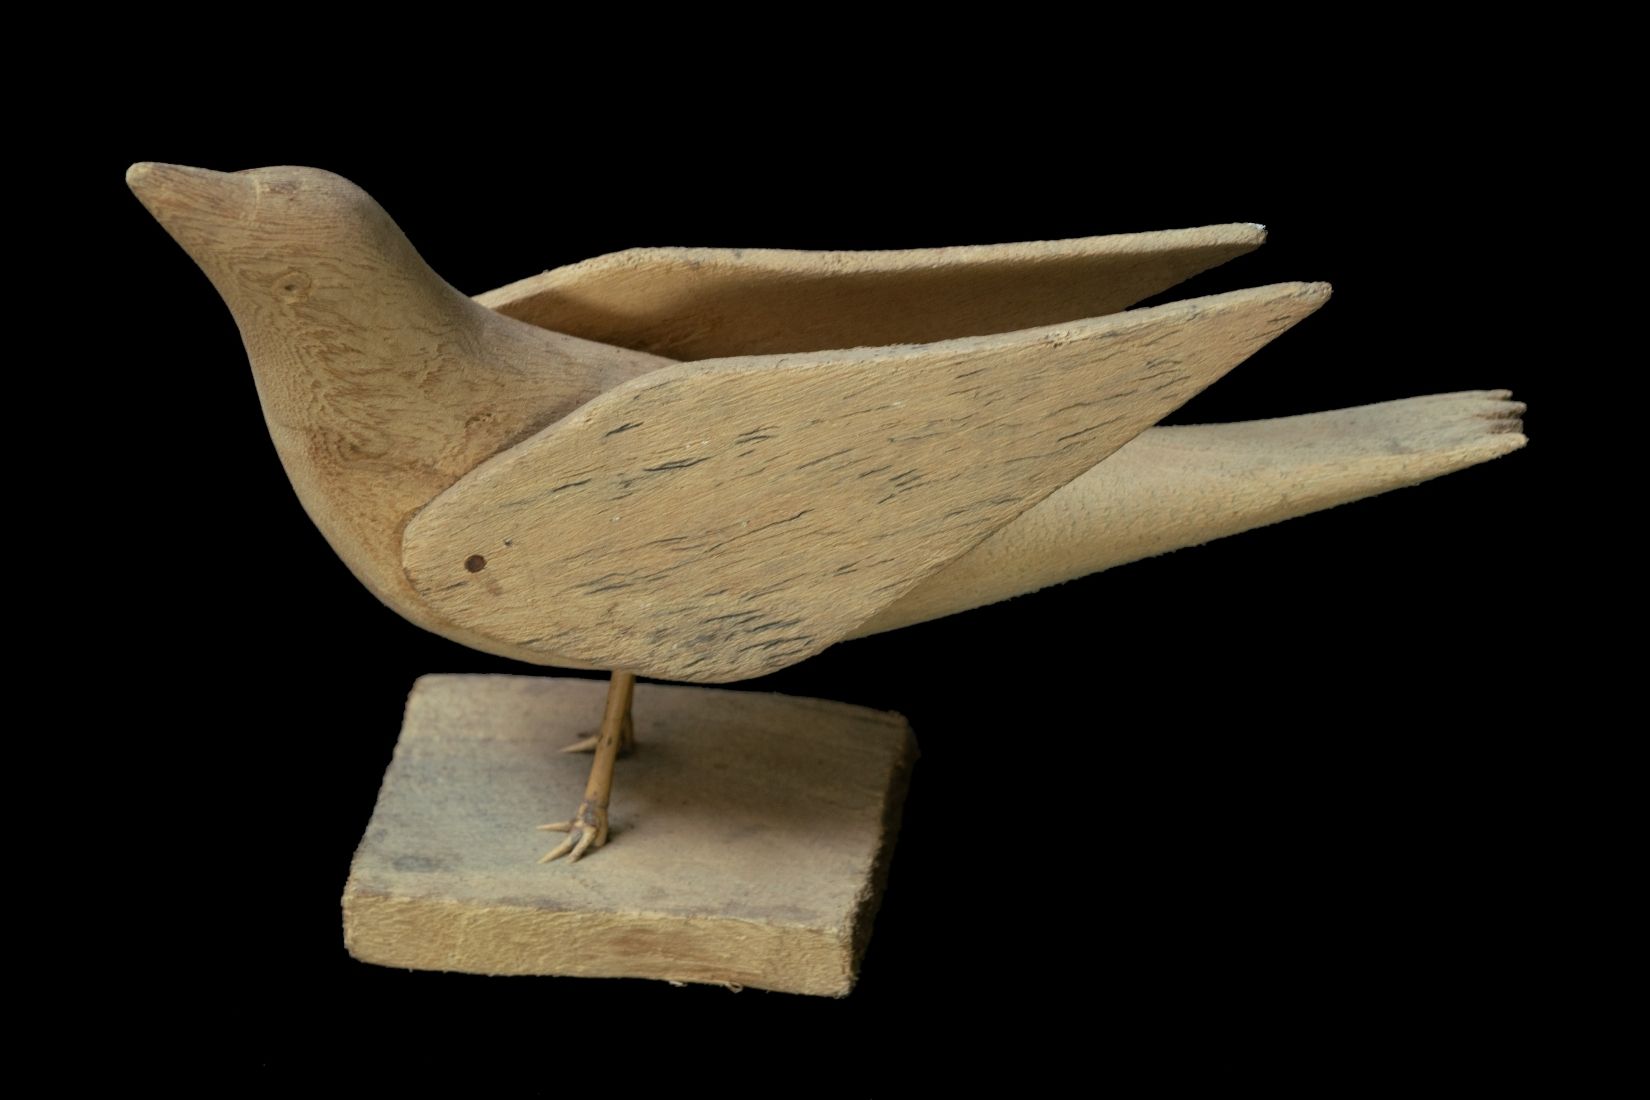 Pájaro de madera tallada. Artesano y procedencia desconocidos. Col. Populart. (Foto: EKV).